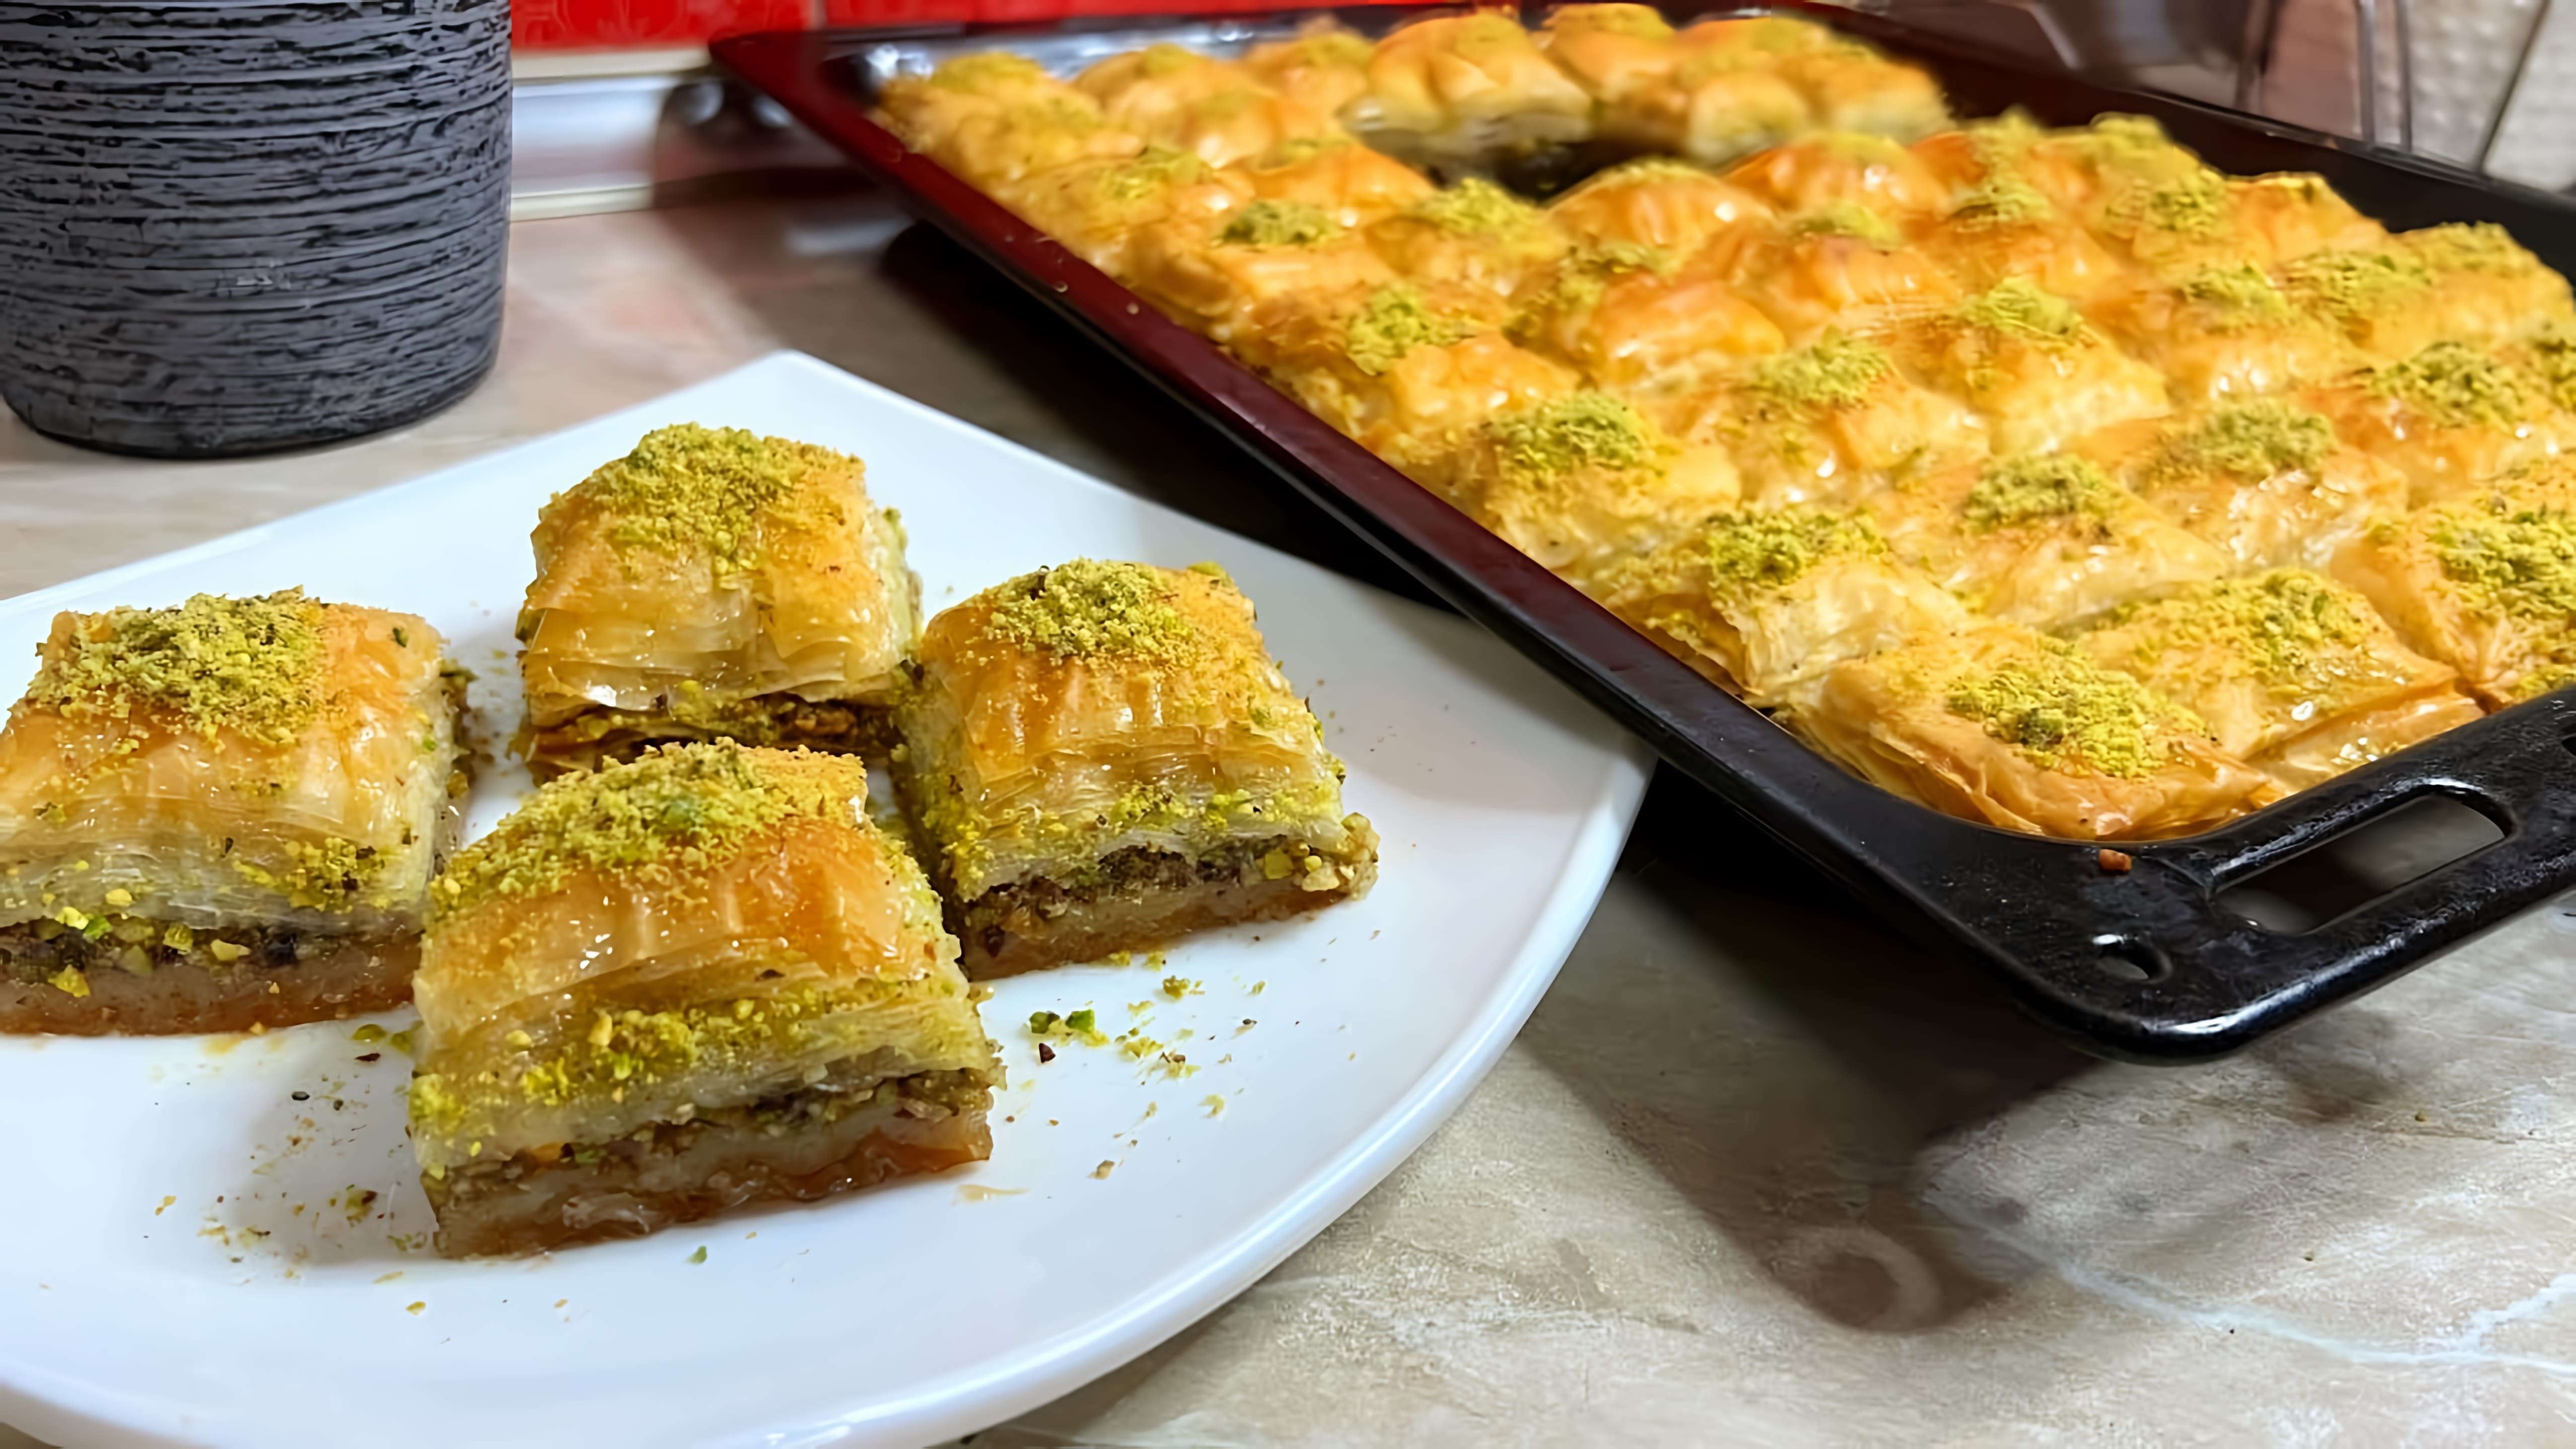 В данном видео демонстрируется процесс приготовления пахлавы, турецкого десерта